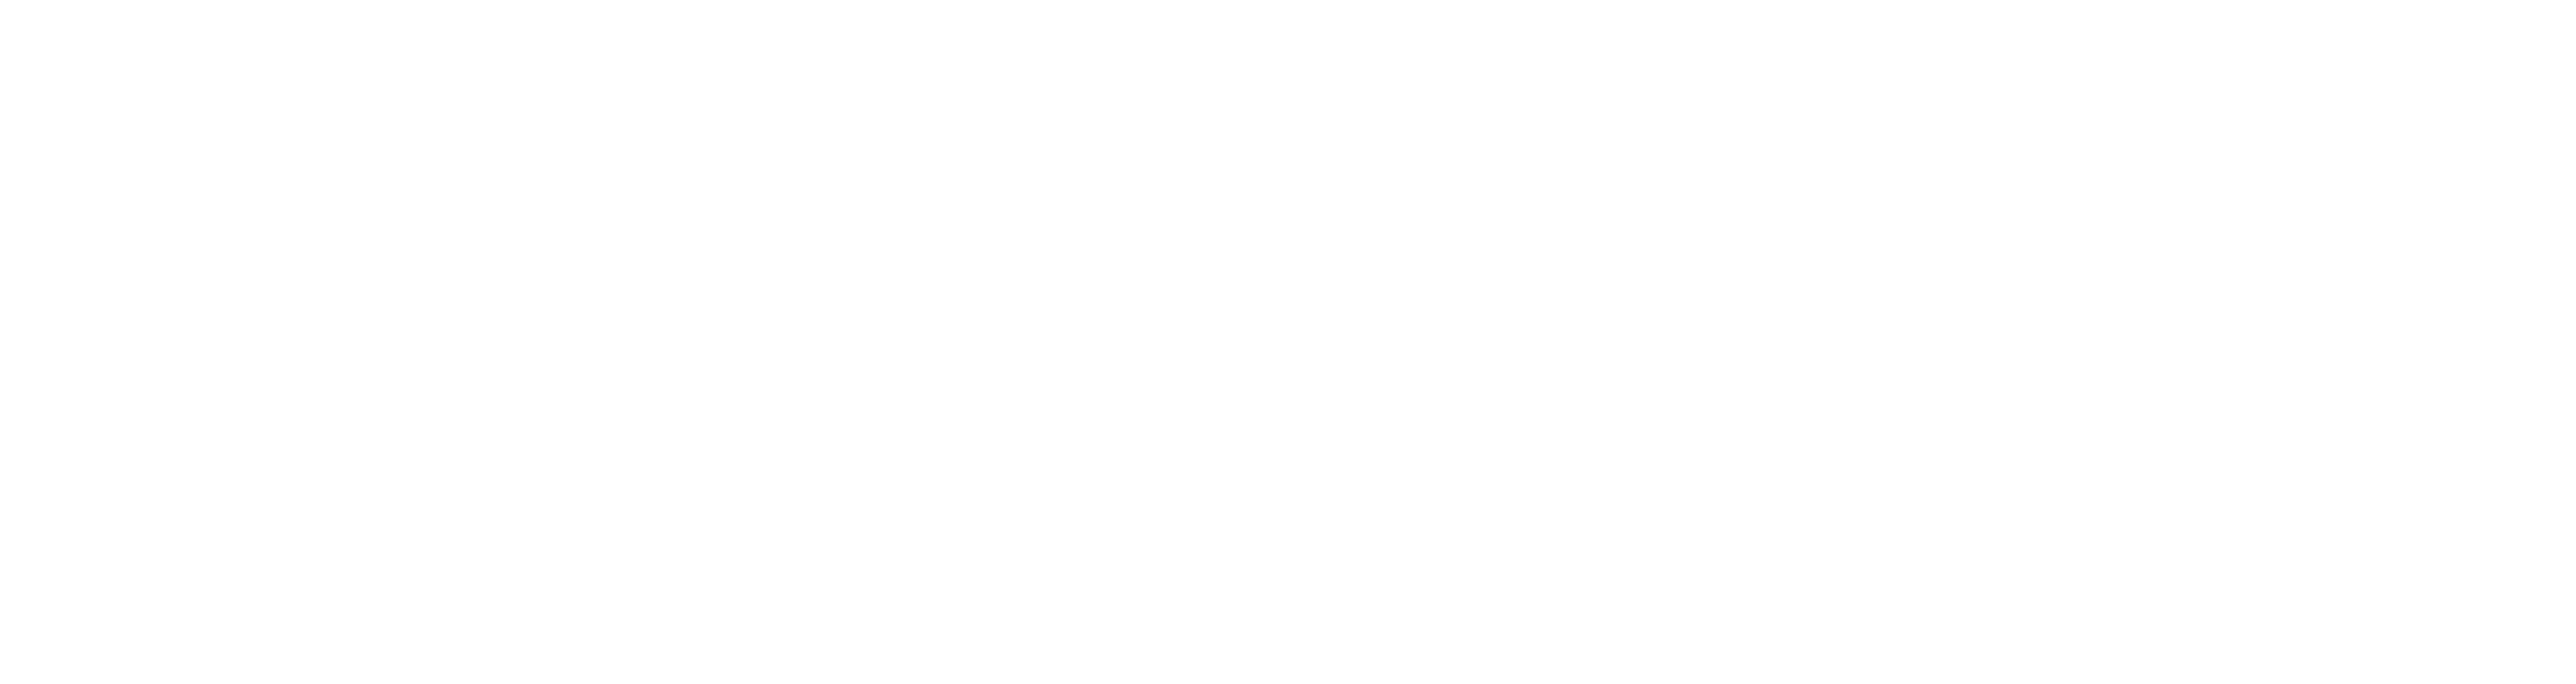 Clinica Veterinaria CMV Varese logo